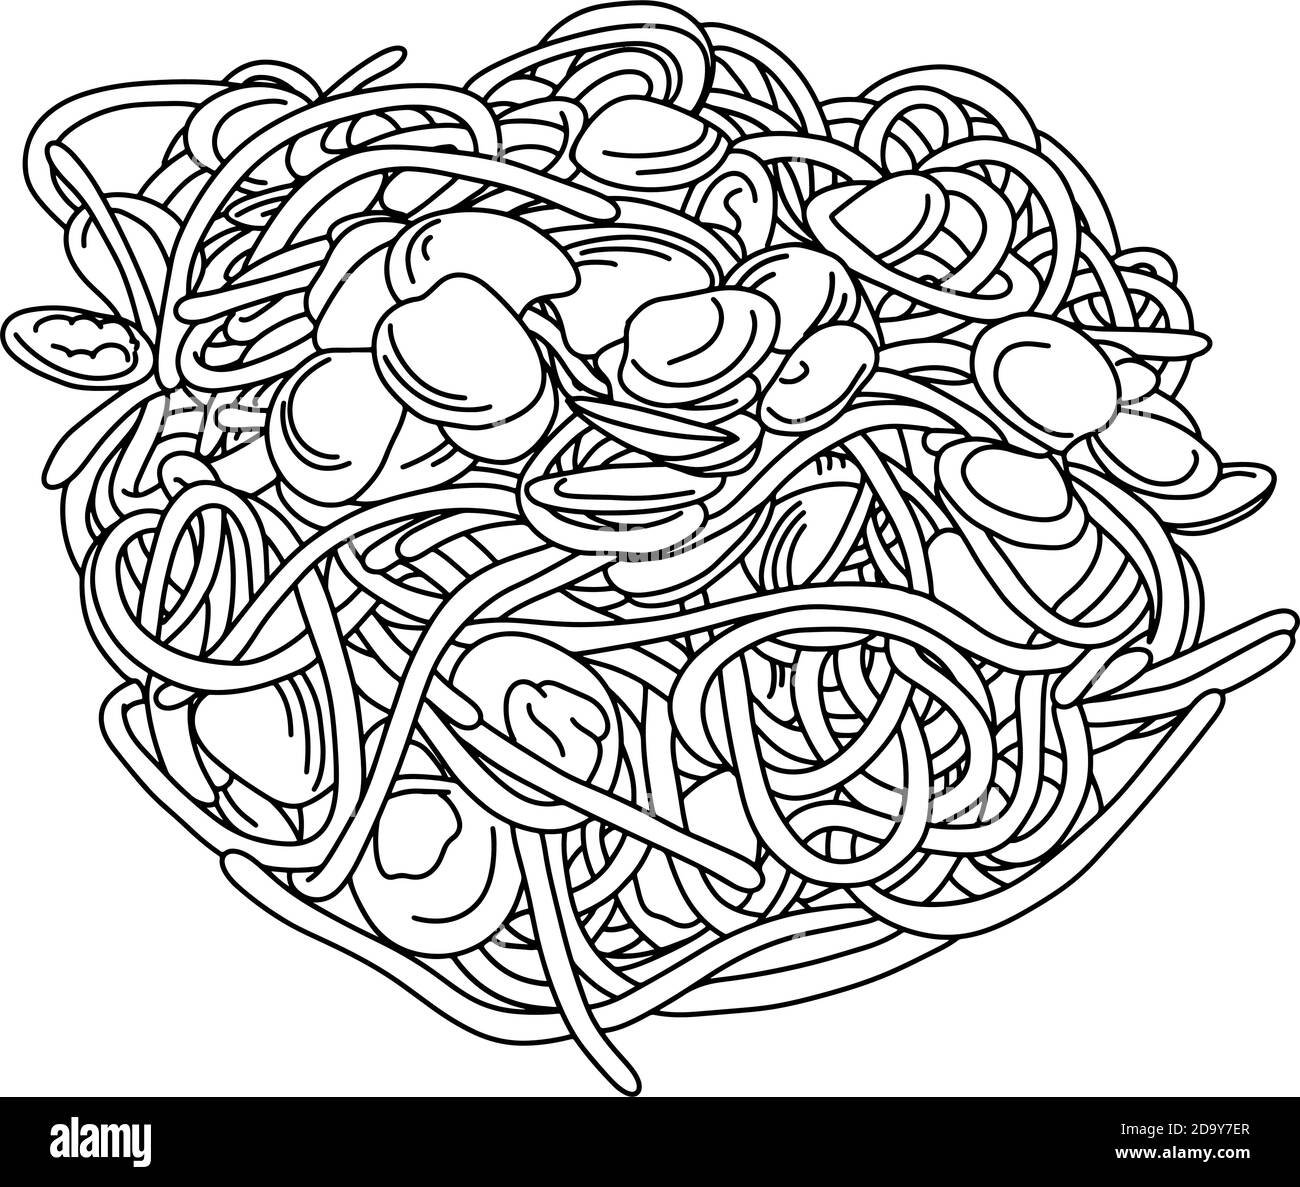 Spaghetti avec palourdes vecteur illustration esquisse Doodle main dessiné avec lignes noires isolées sur fond blanc Illustration de Vecteur